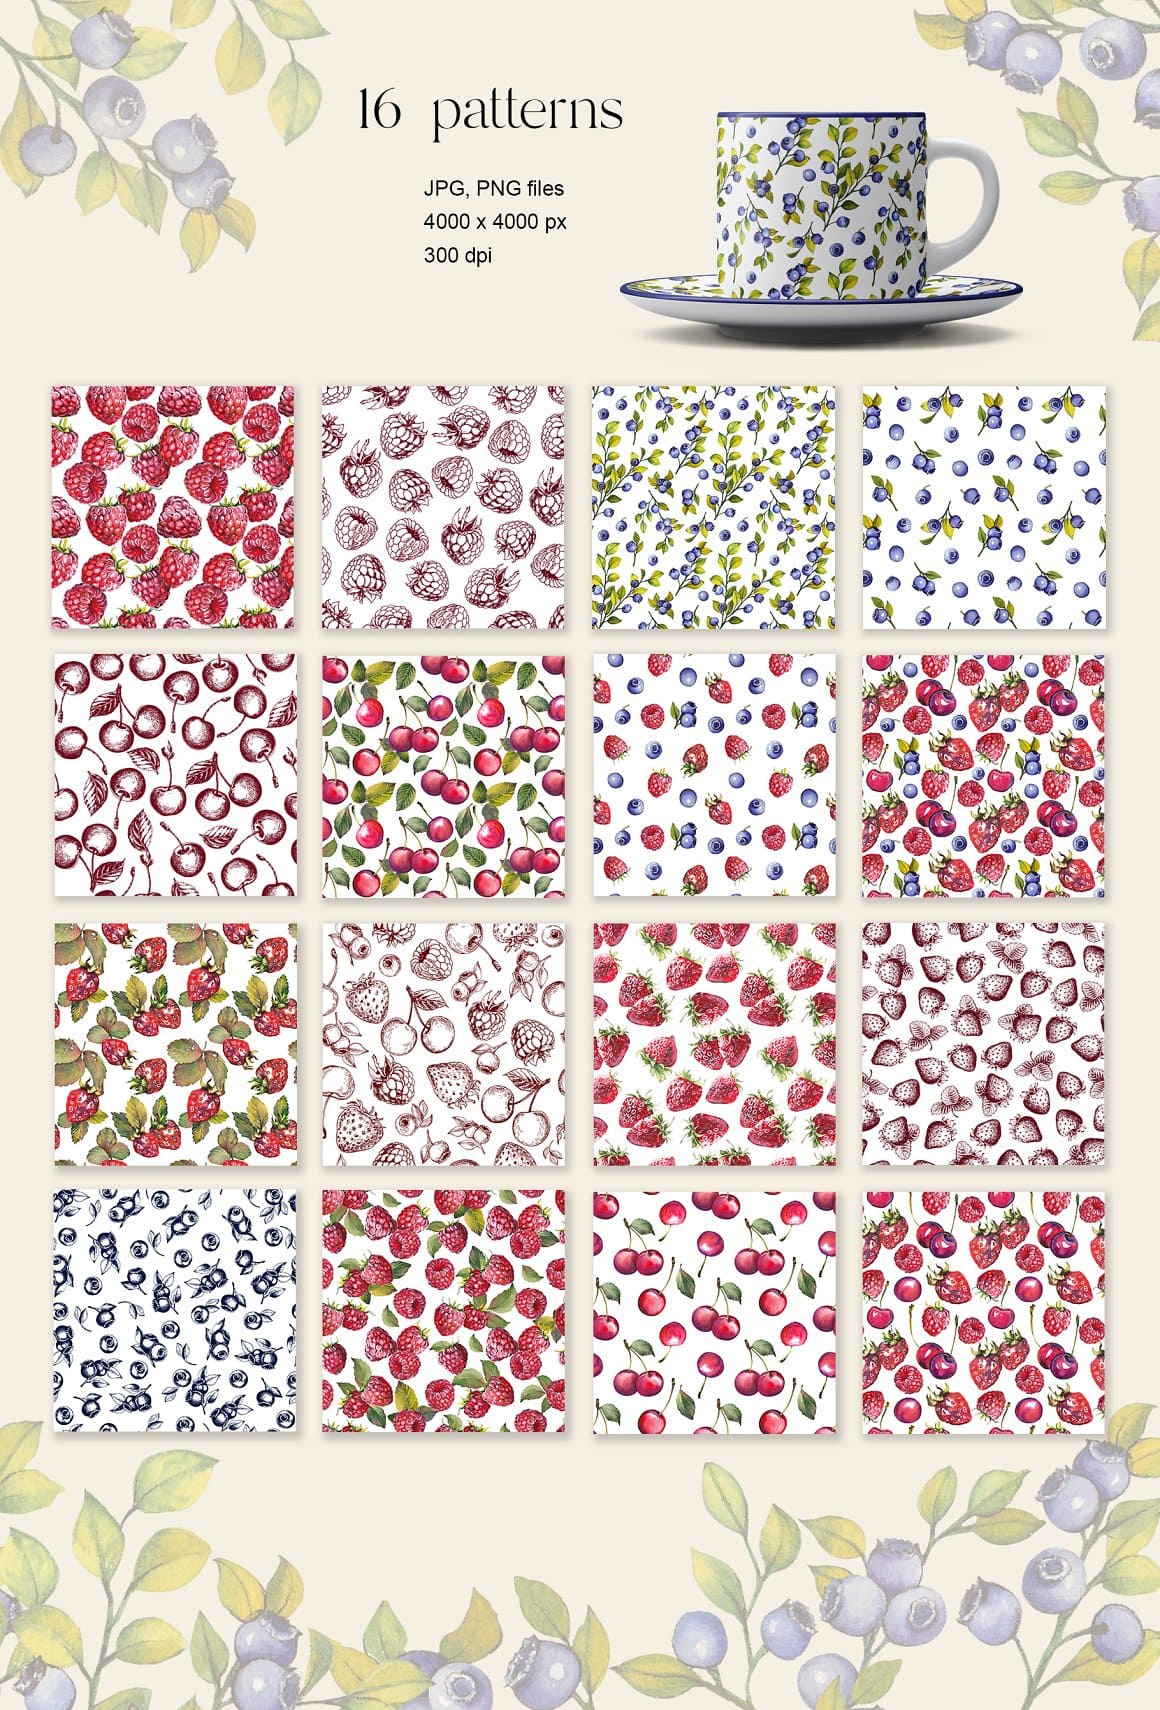 16 berries patterns.